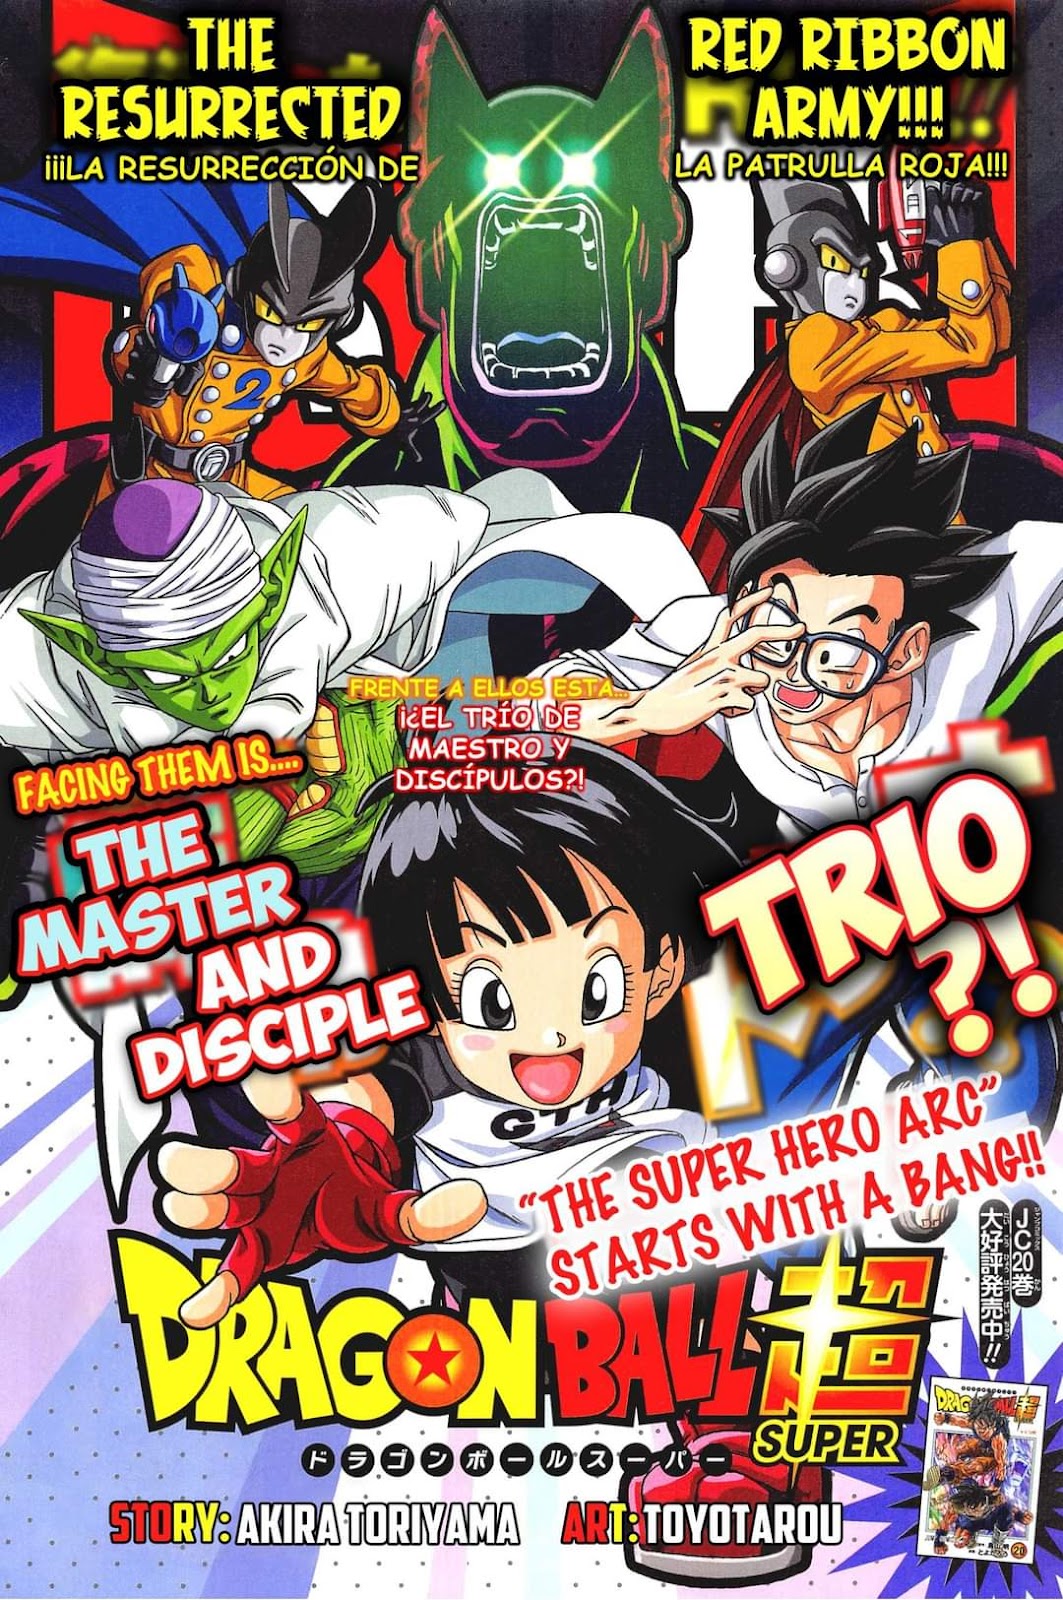 Dragon Ball Super: ¿Cuándo se estrena el capítulo 91 del manga?